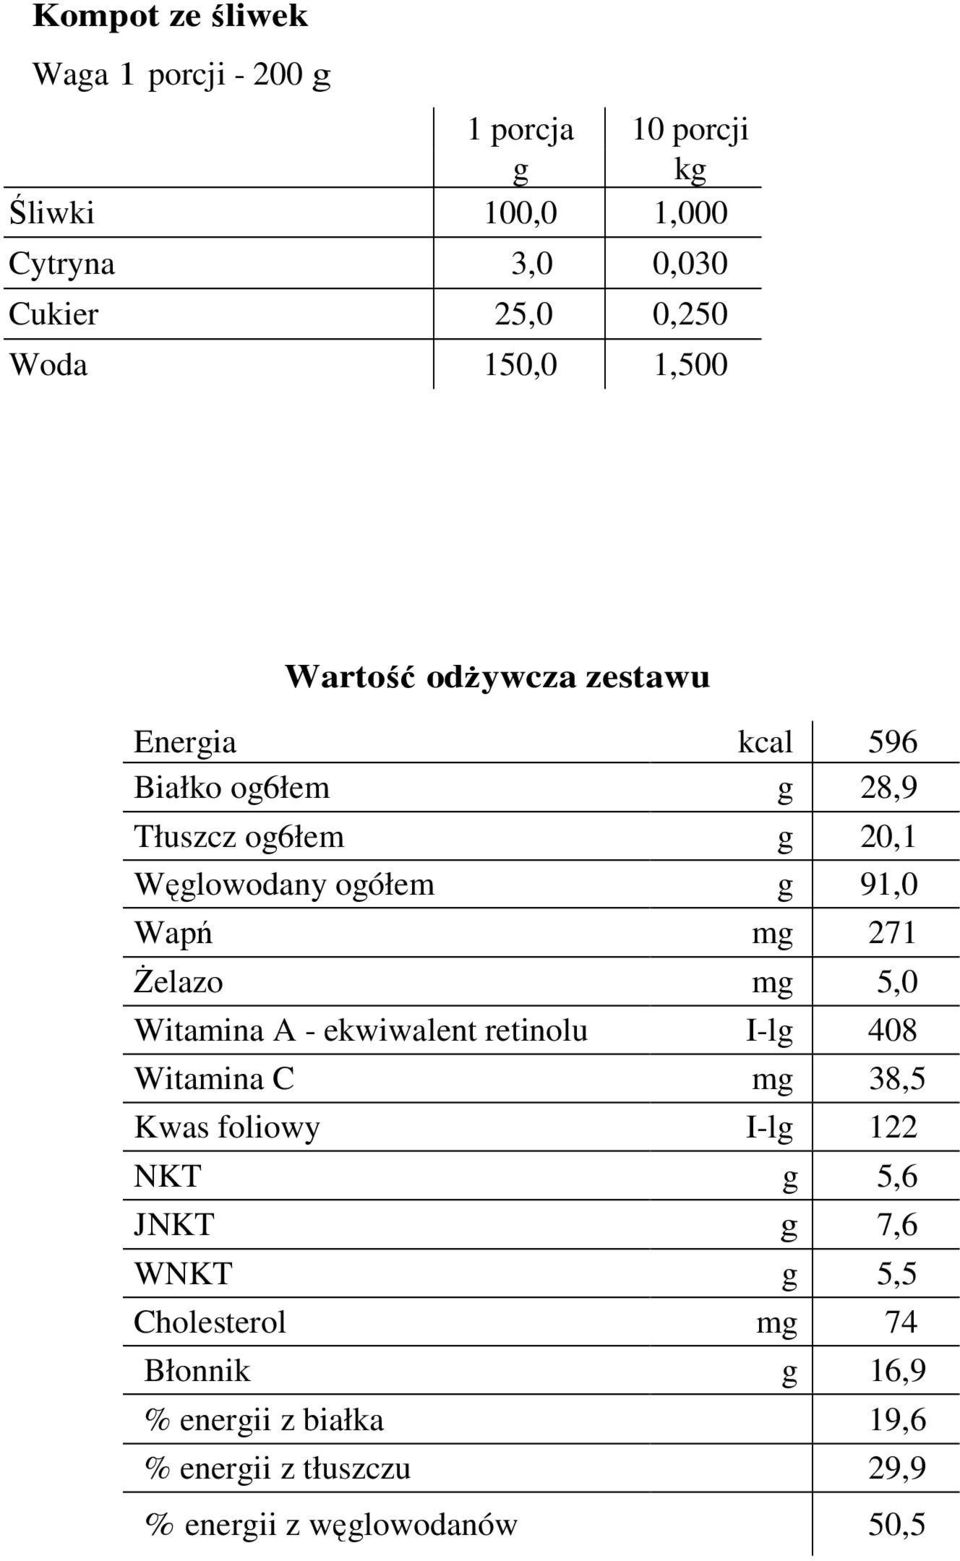 mg 271 śelazo mg 5,0 Witamina A - ekwiwalent retinolu I-lg 408 Witamina C mg 38,5 Kwas foliowy I-lg 122 NKT g 5,6 JNKT g